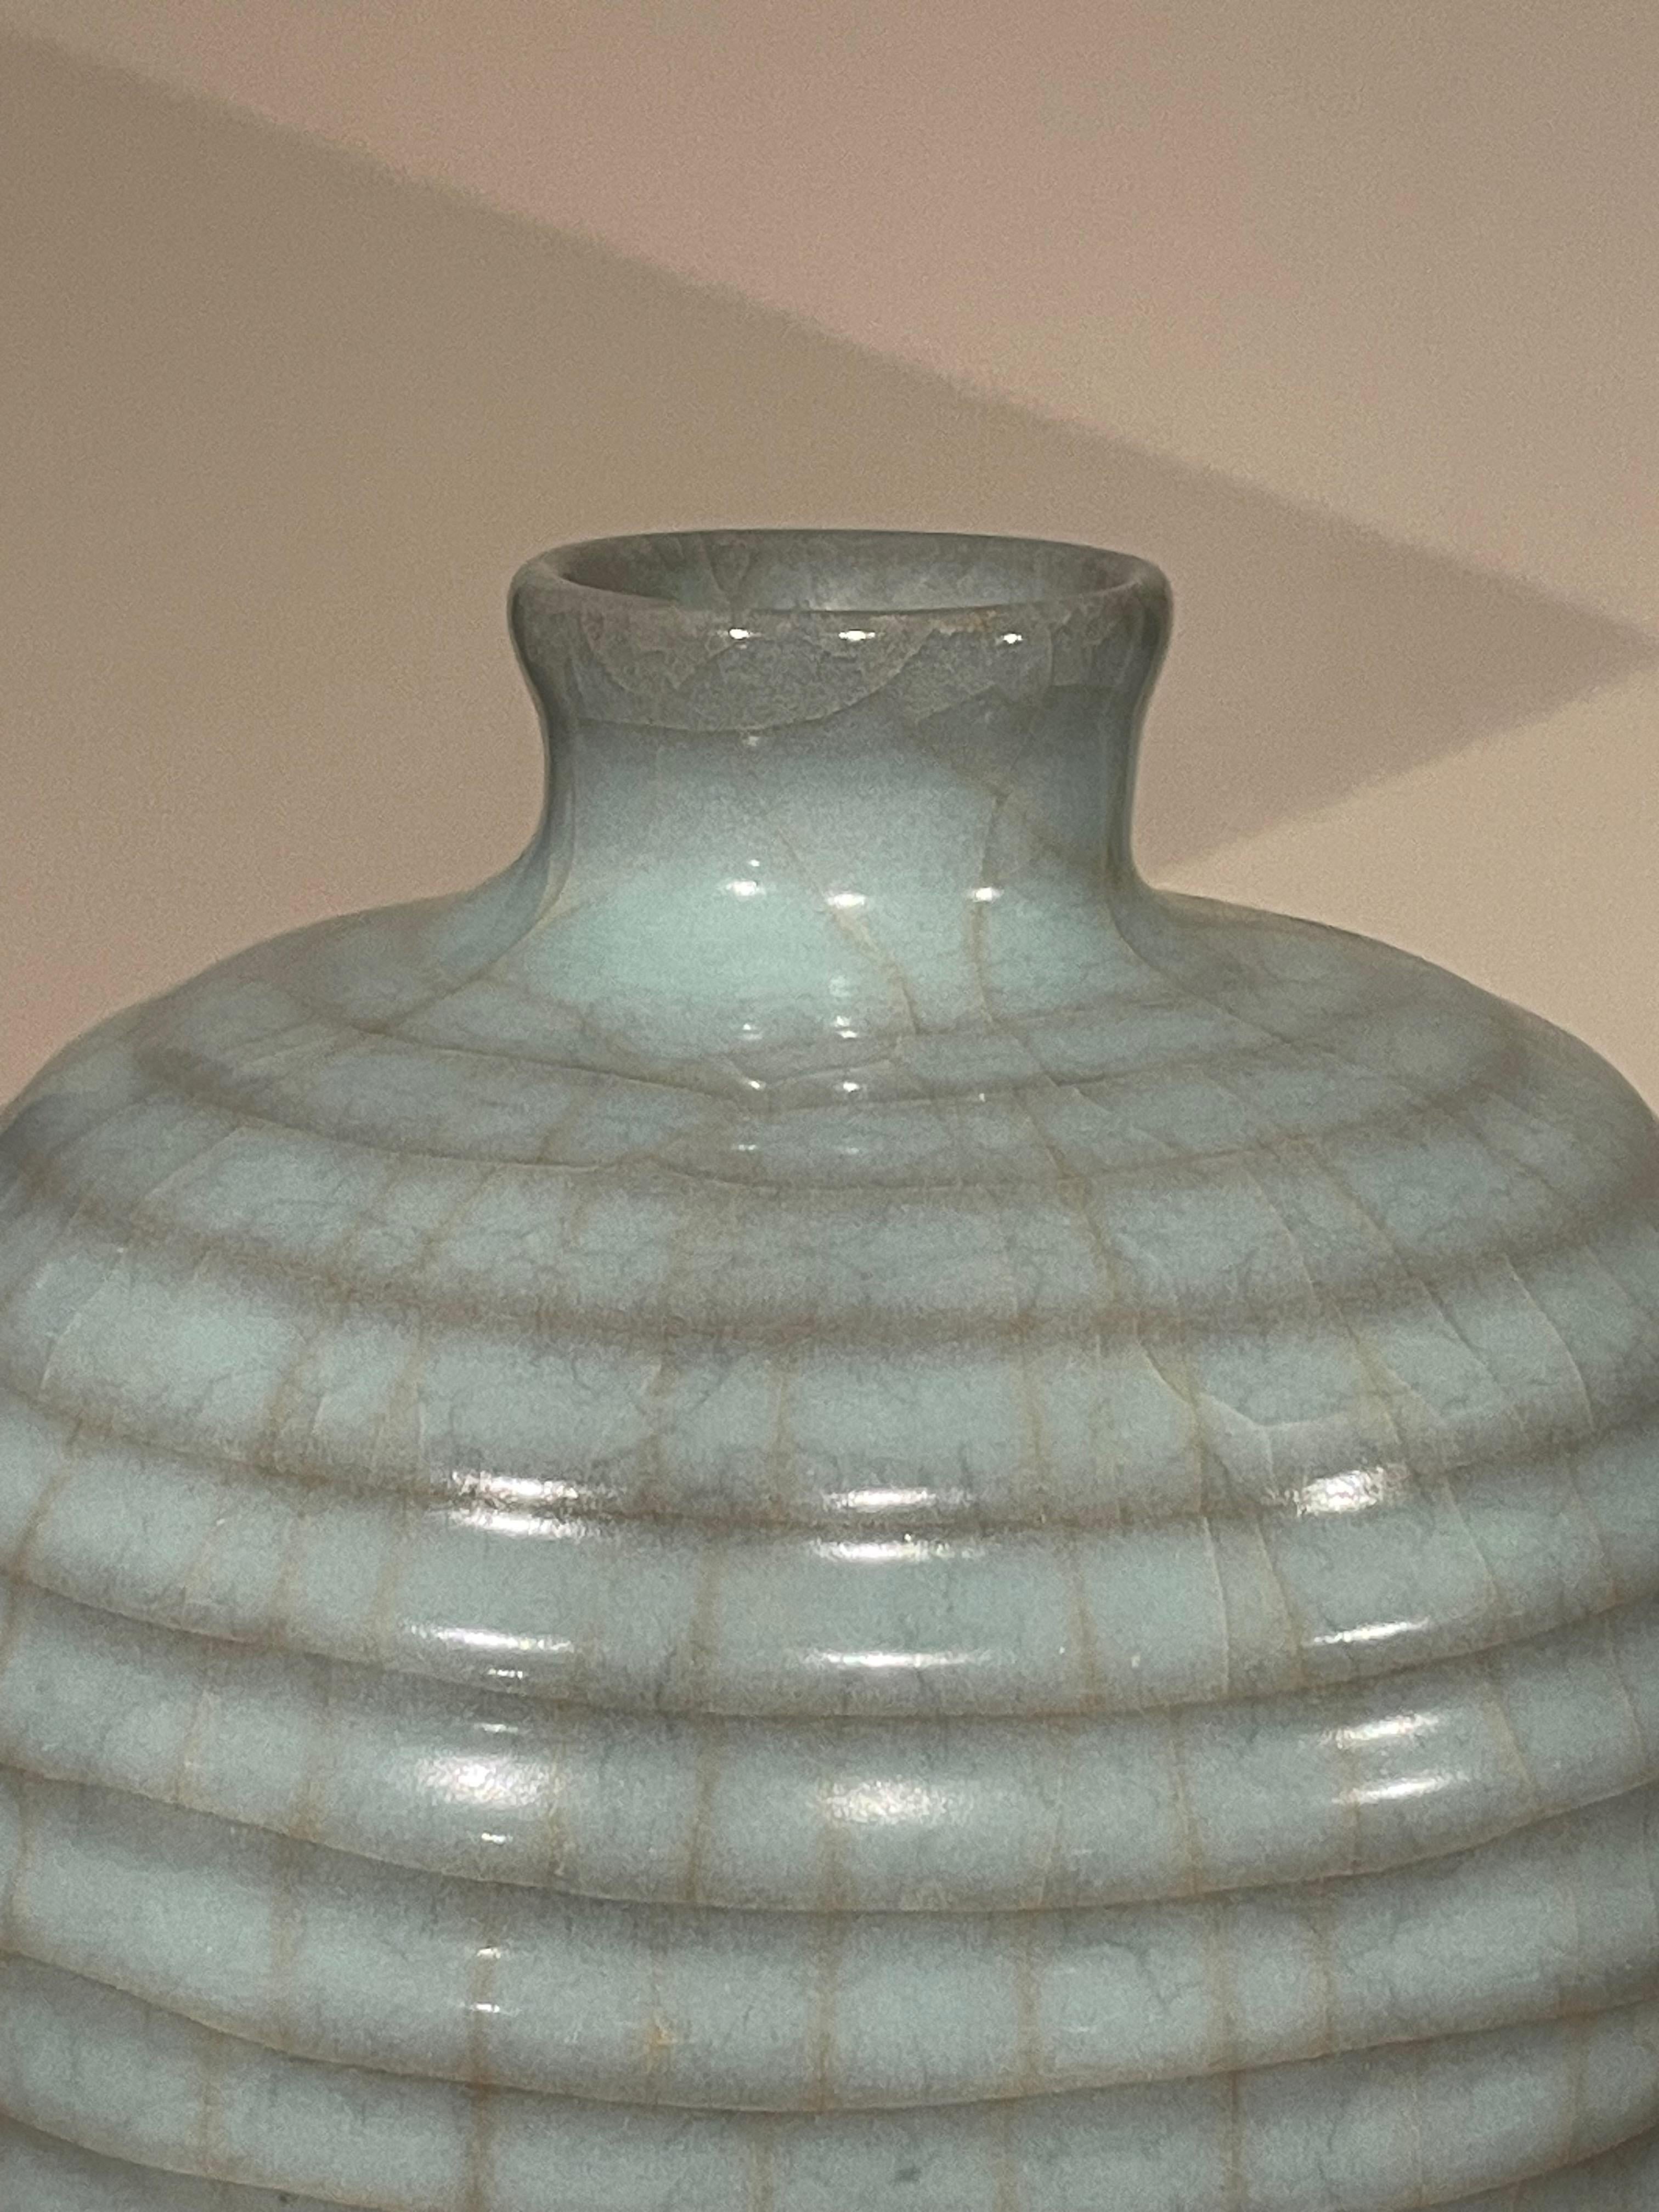 Vase contemporain chinois de couleur turquoise pâle.
Design/One horizontal.
Une large collection est disponible avec des tailles et des formes variées.
ARRIVÉE AVRIL